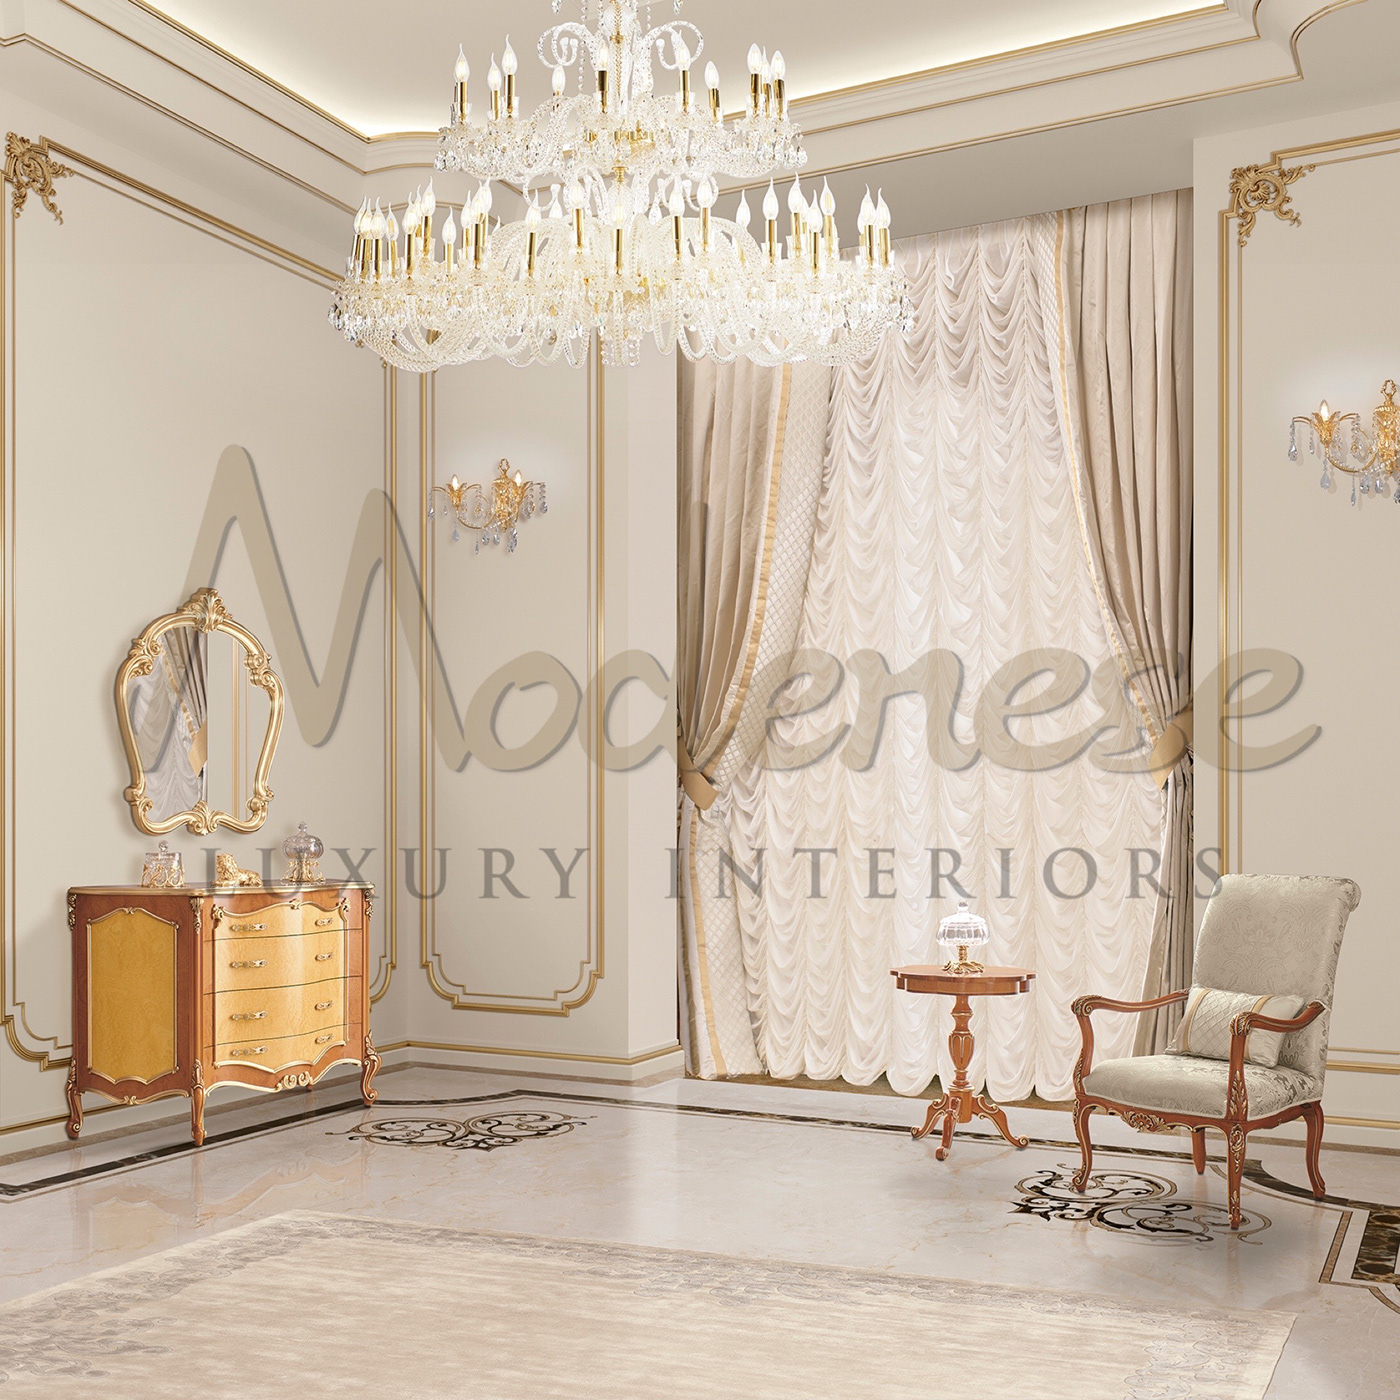 furniture bedroom bedroomdesign interiordesign interior designer classicbedroom